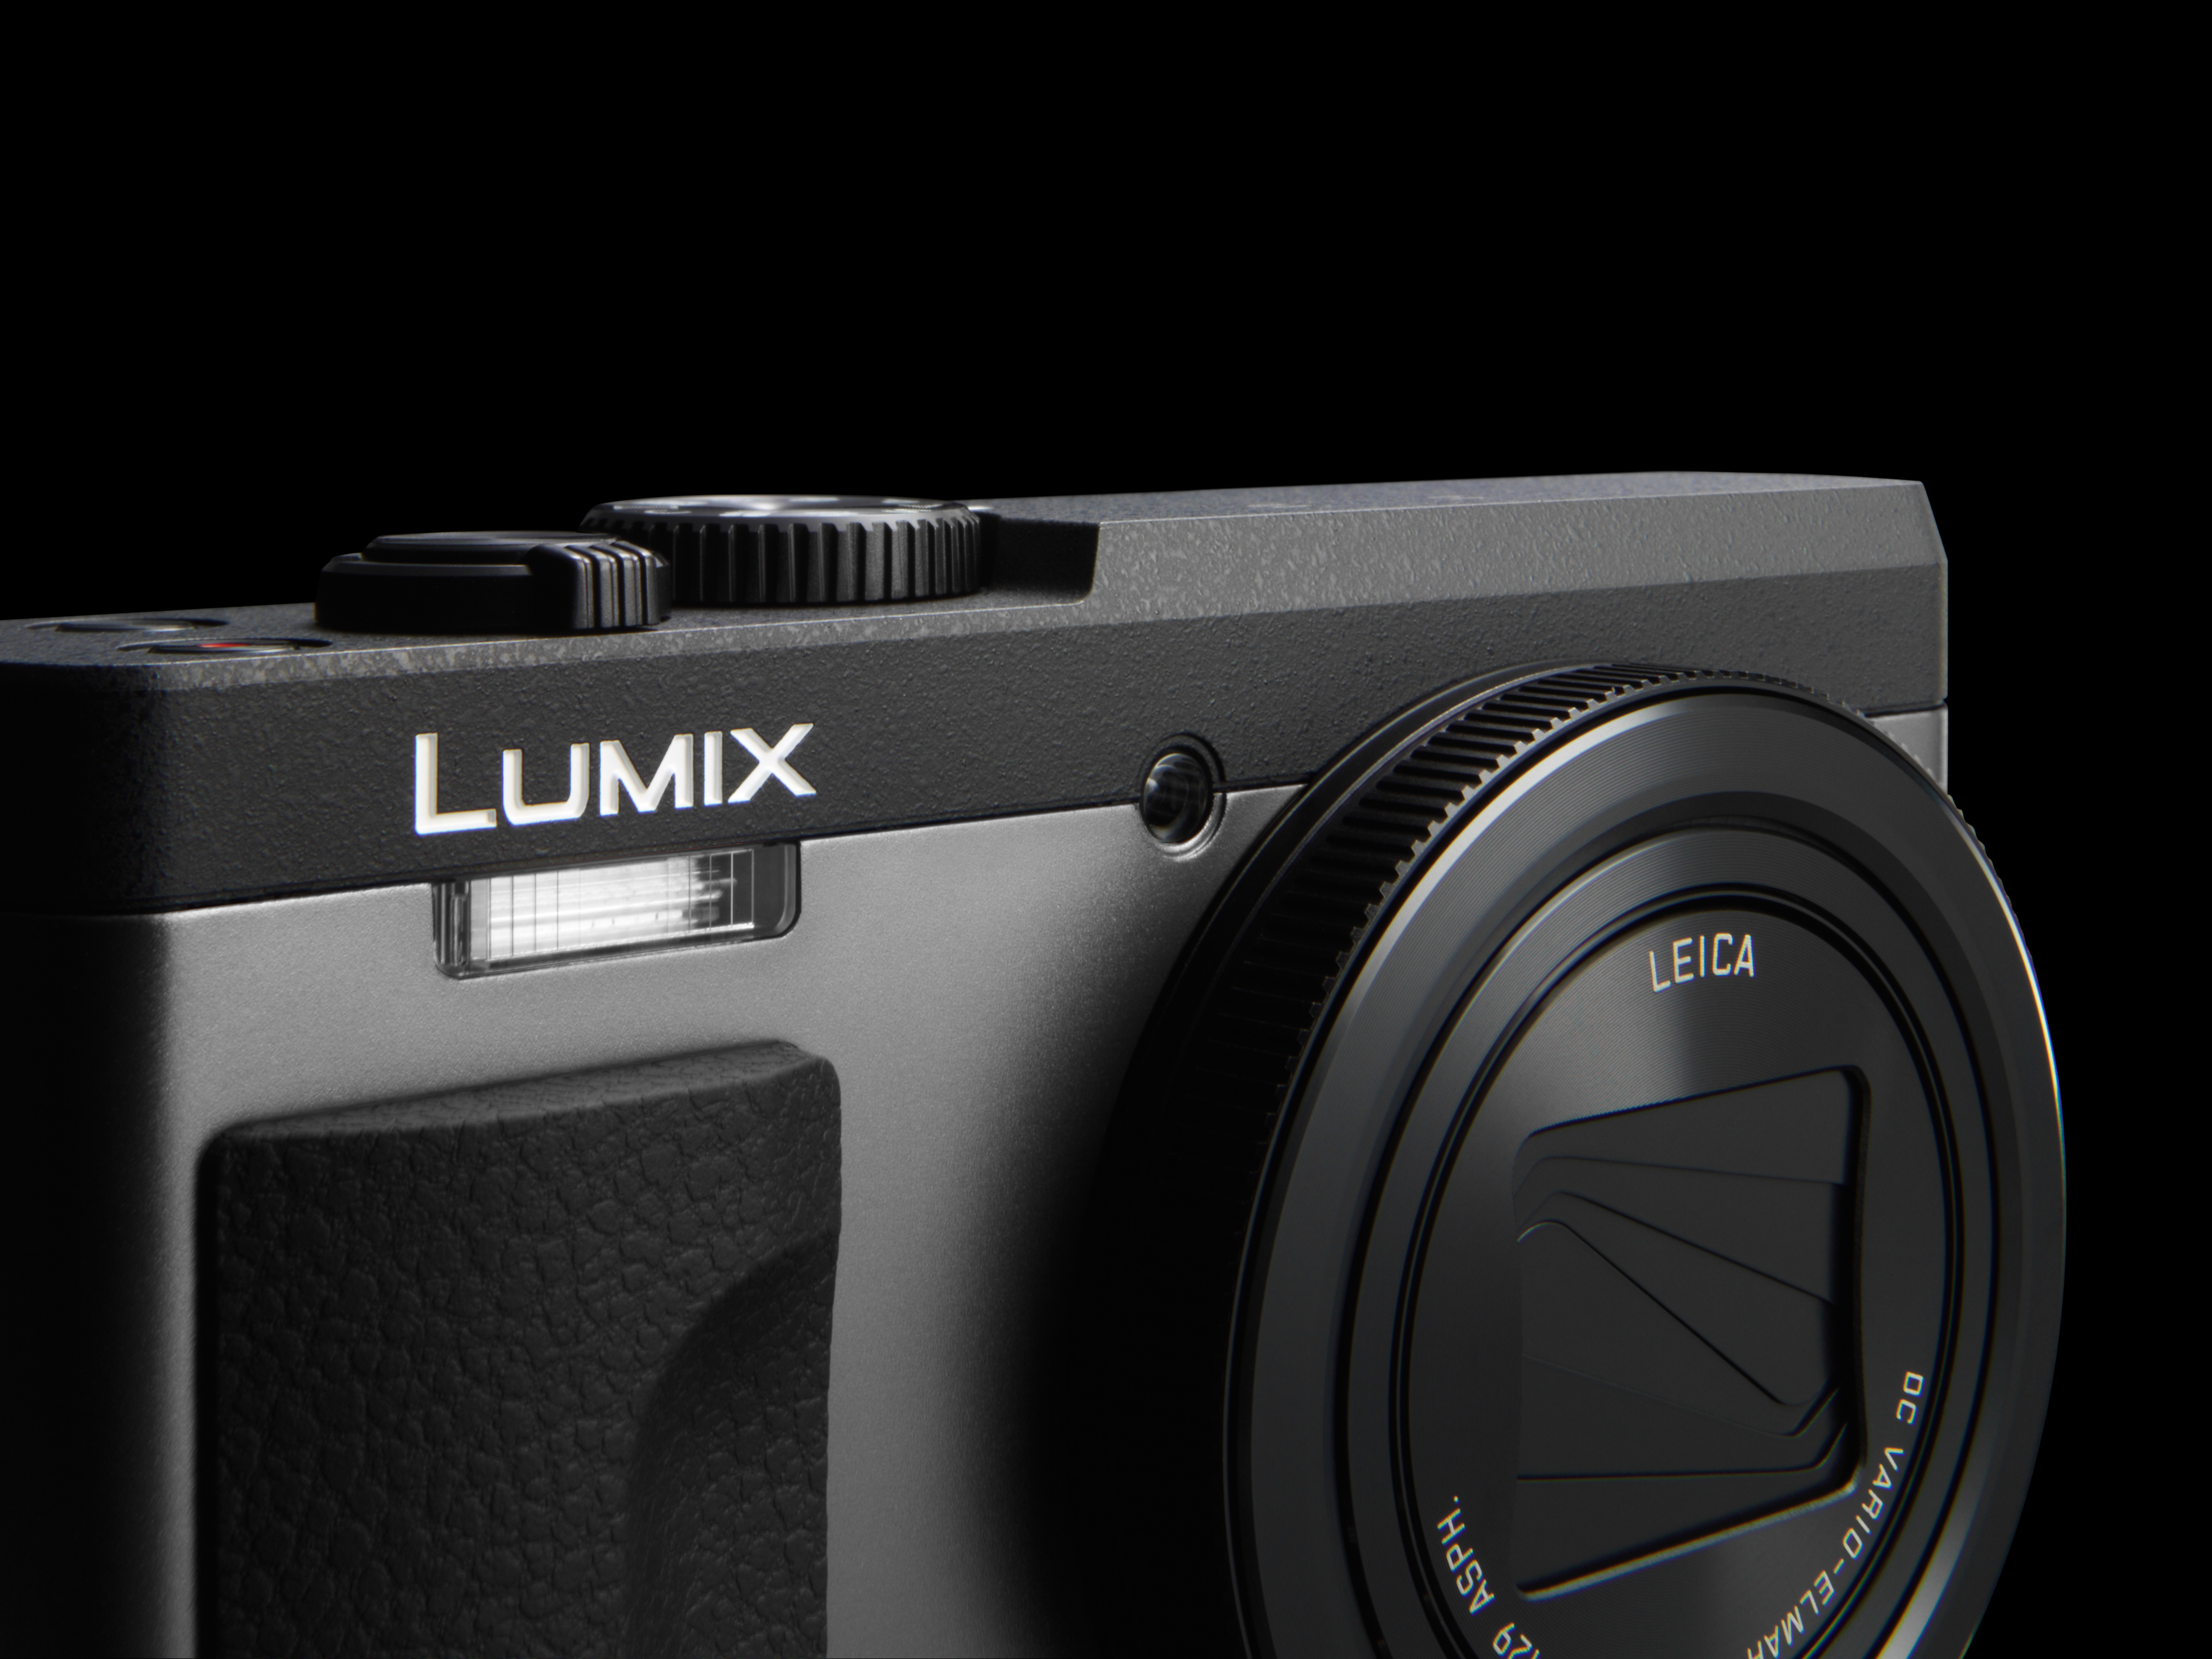 Noua cameră LUMIX DC-TZ90 cu superangular de 24 mm și zoom optic de 30x pentru înregistrare 4K VIDEO/4K PHOTO și selfie-uri reușite